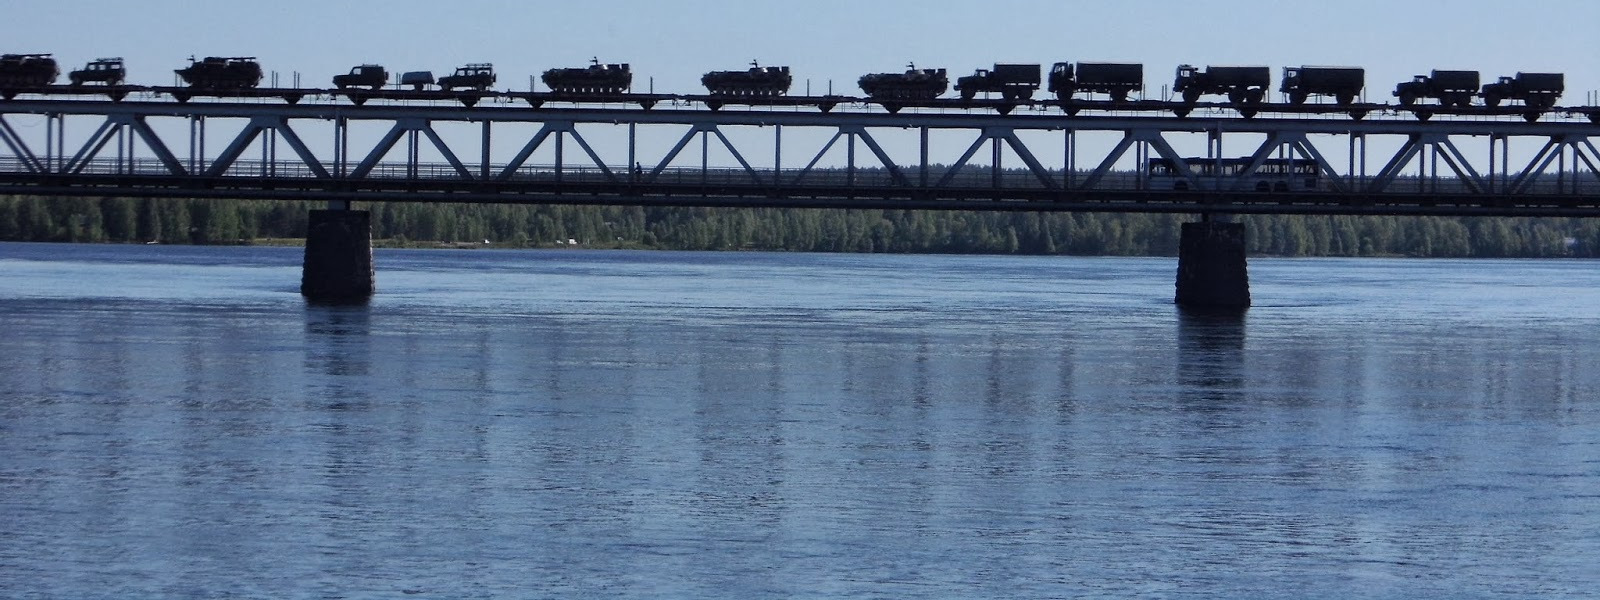 Ülikoolide lipuväljakutel lehvivad lõvivapiga lipud. Ebatavaline vaade Jorma Etto sillale Rovaniemis. Kotta, Rovaniemi 2013.